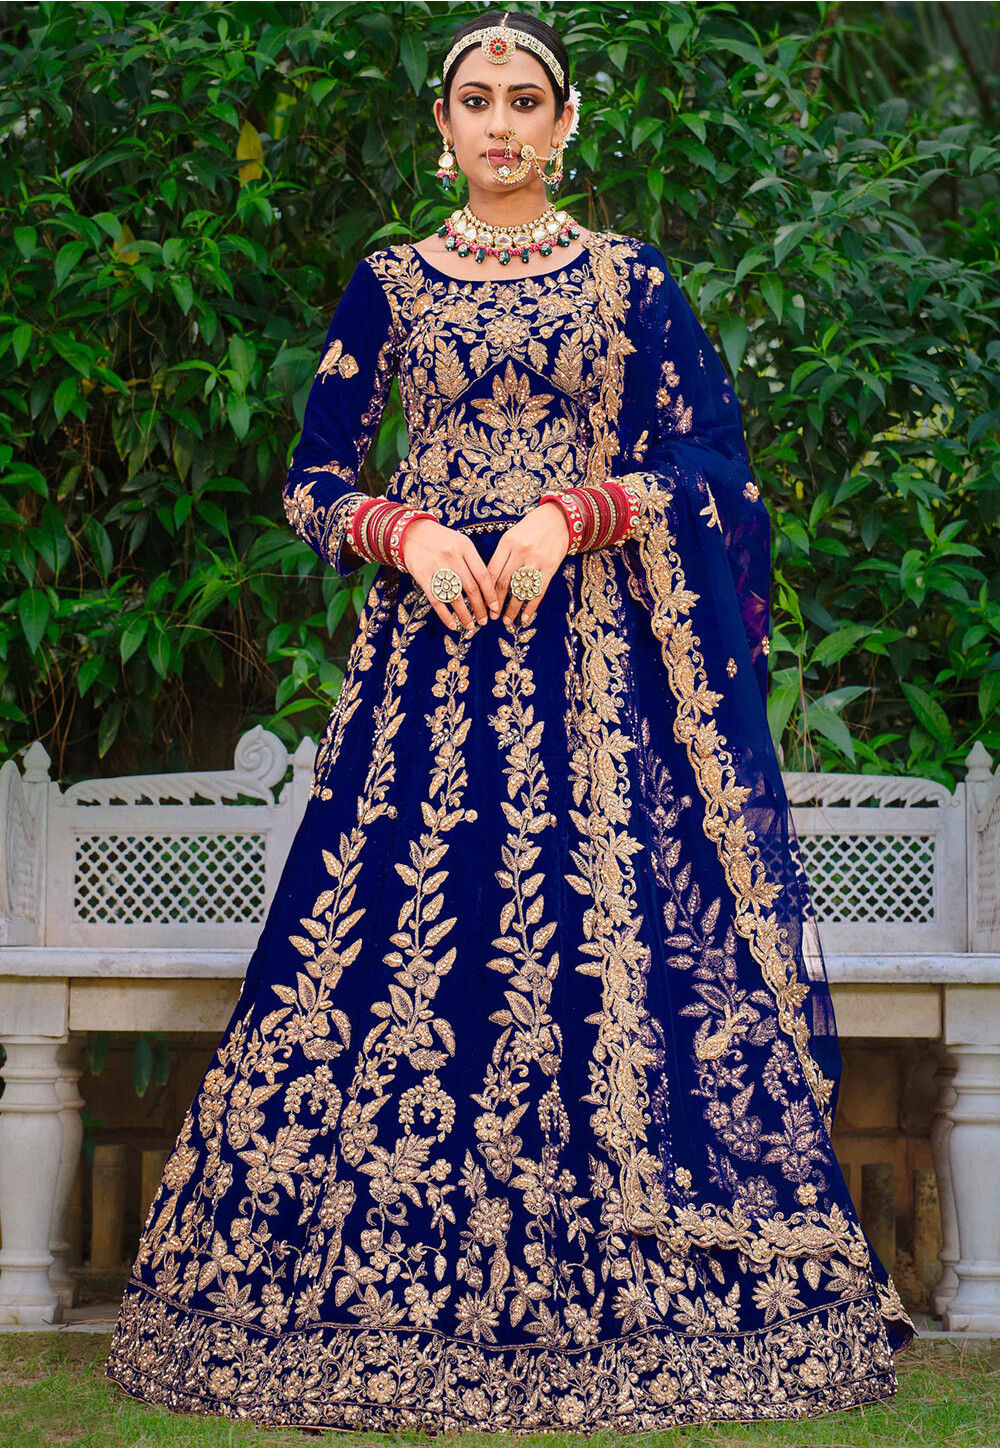 Pinterest | Indian bridal outfits, Indian wedding lehenga, Indian bridal